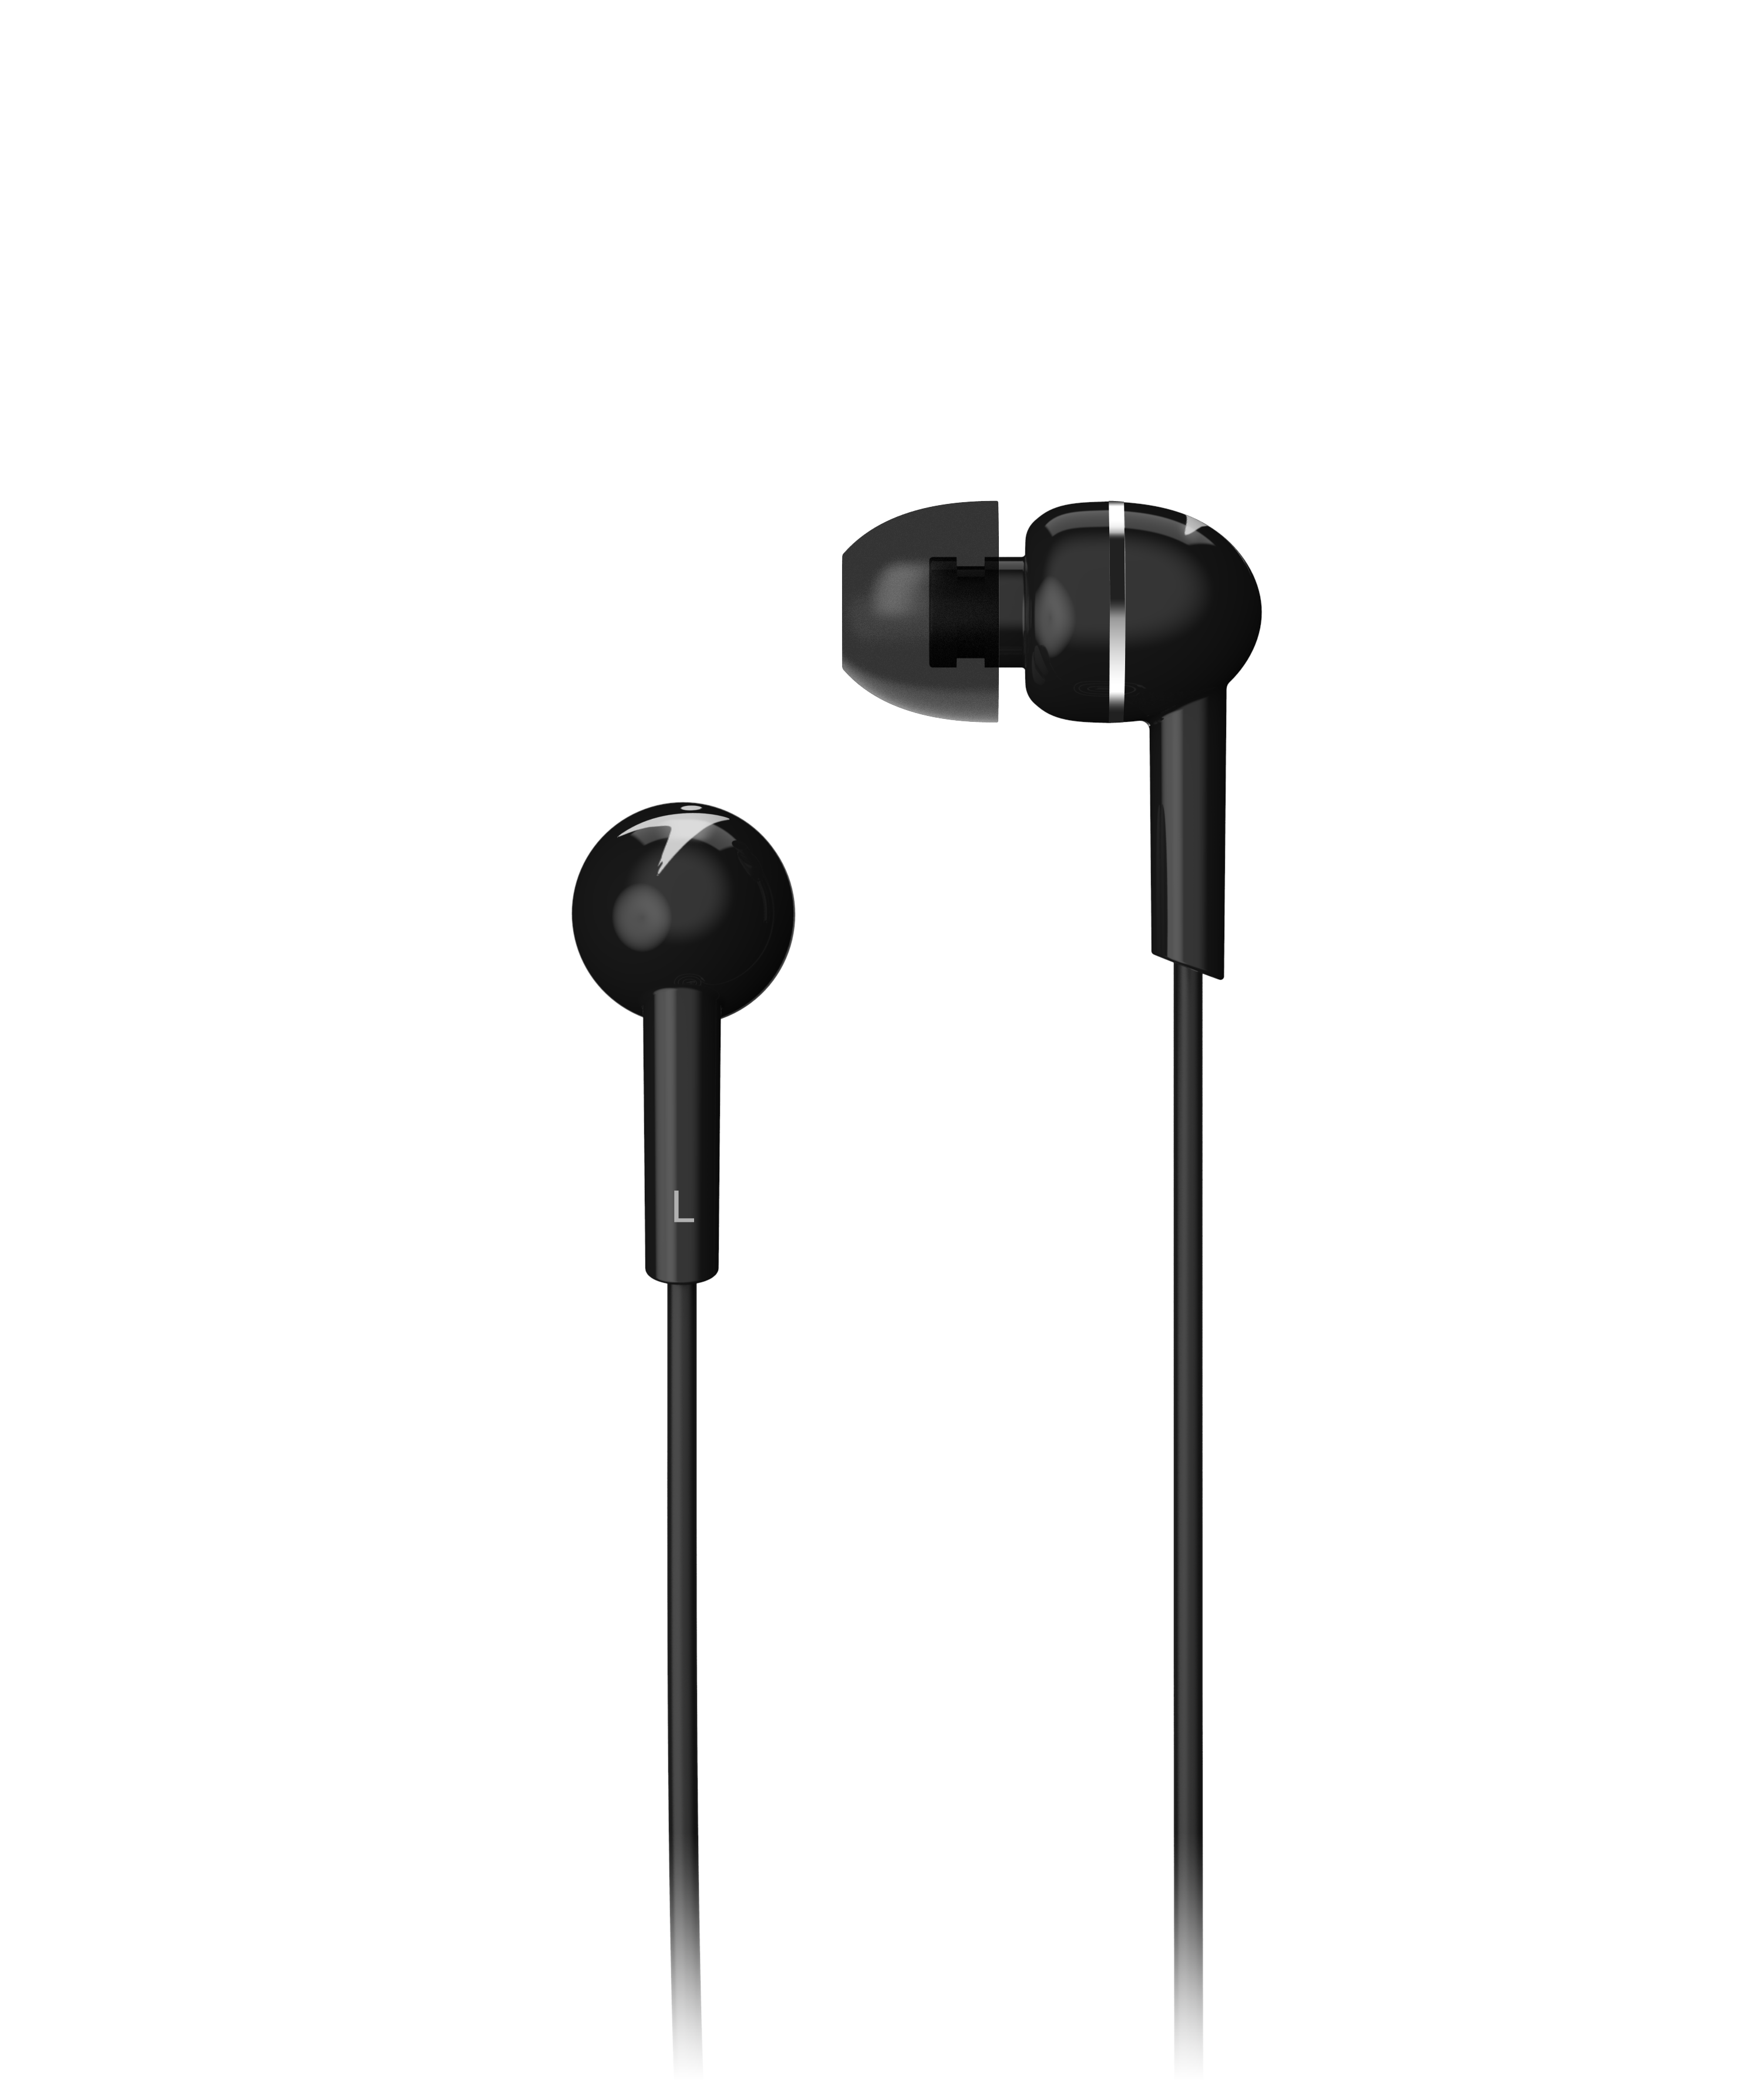 Wholesale headset : hs-m300,black,